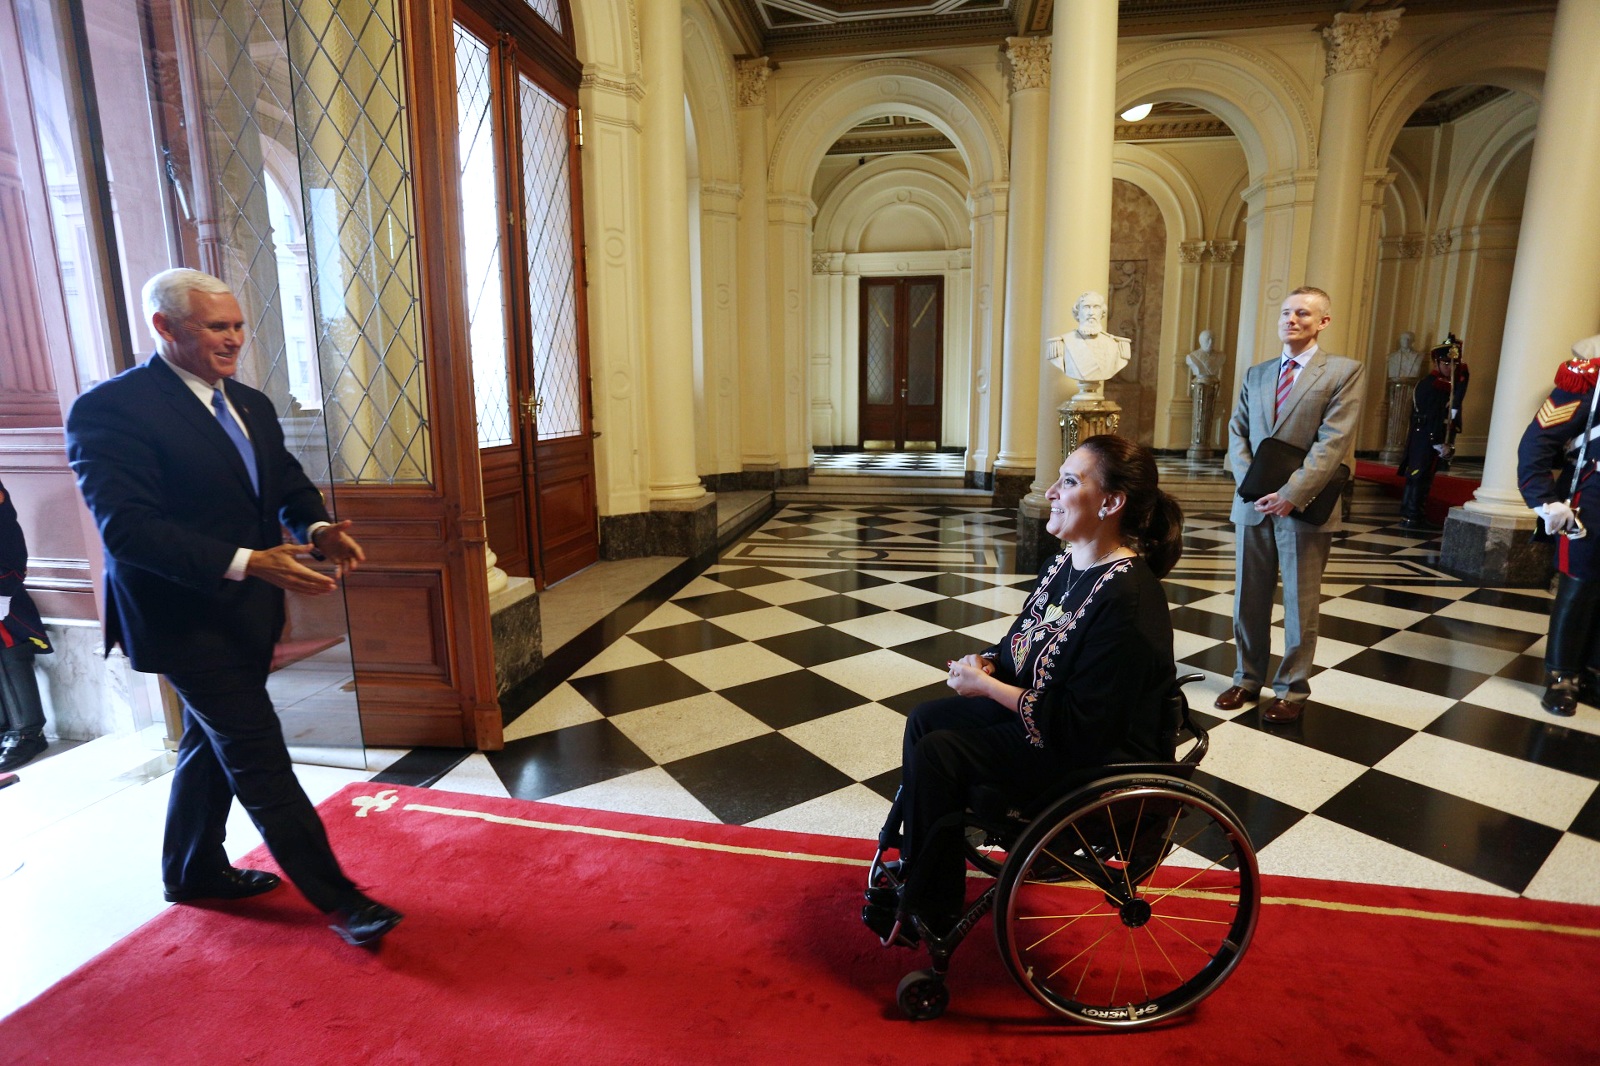 La Vicepresidente recibió en Casa Rosada al vicepresidente de Estados Unidos, Mike Pence